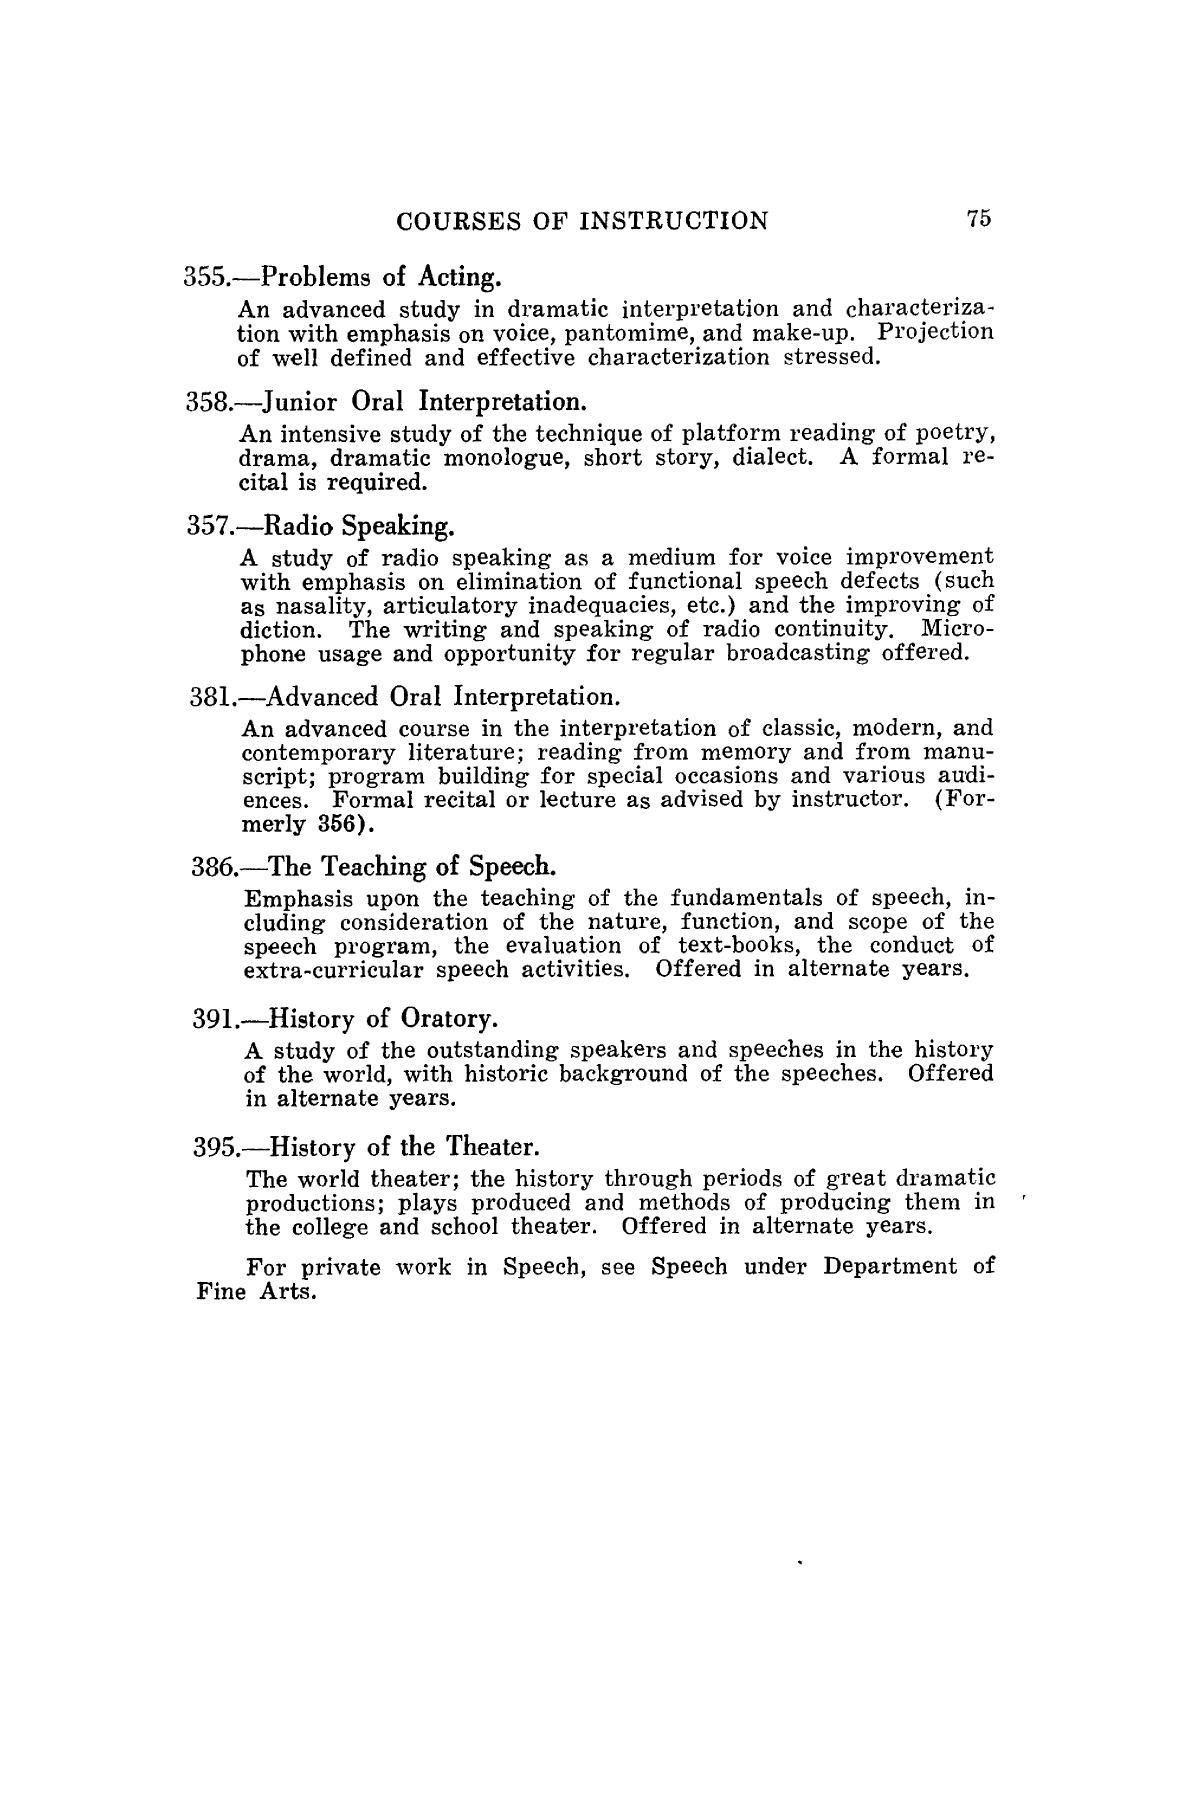 Catalog of Abilene Christian College, 1940-1941
                                                
                                                    75
                                                